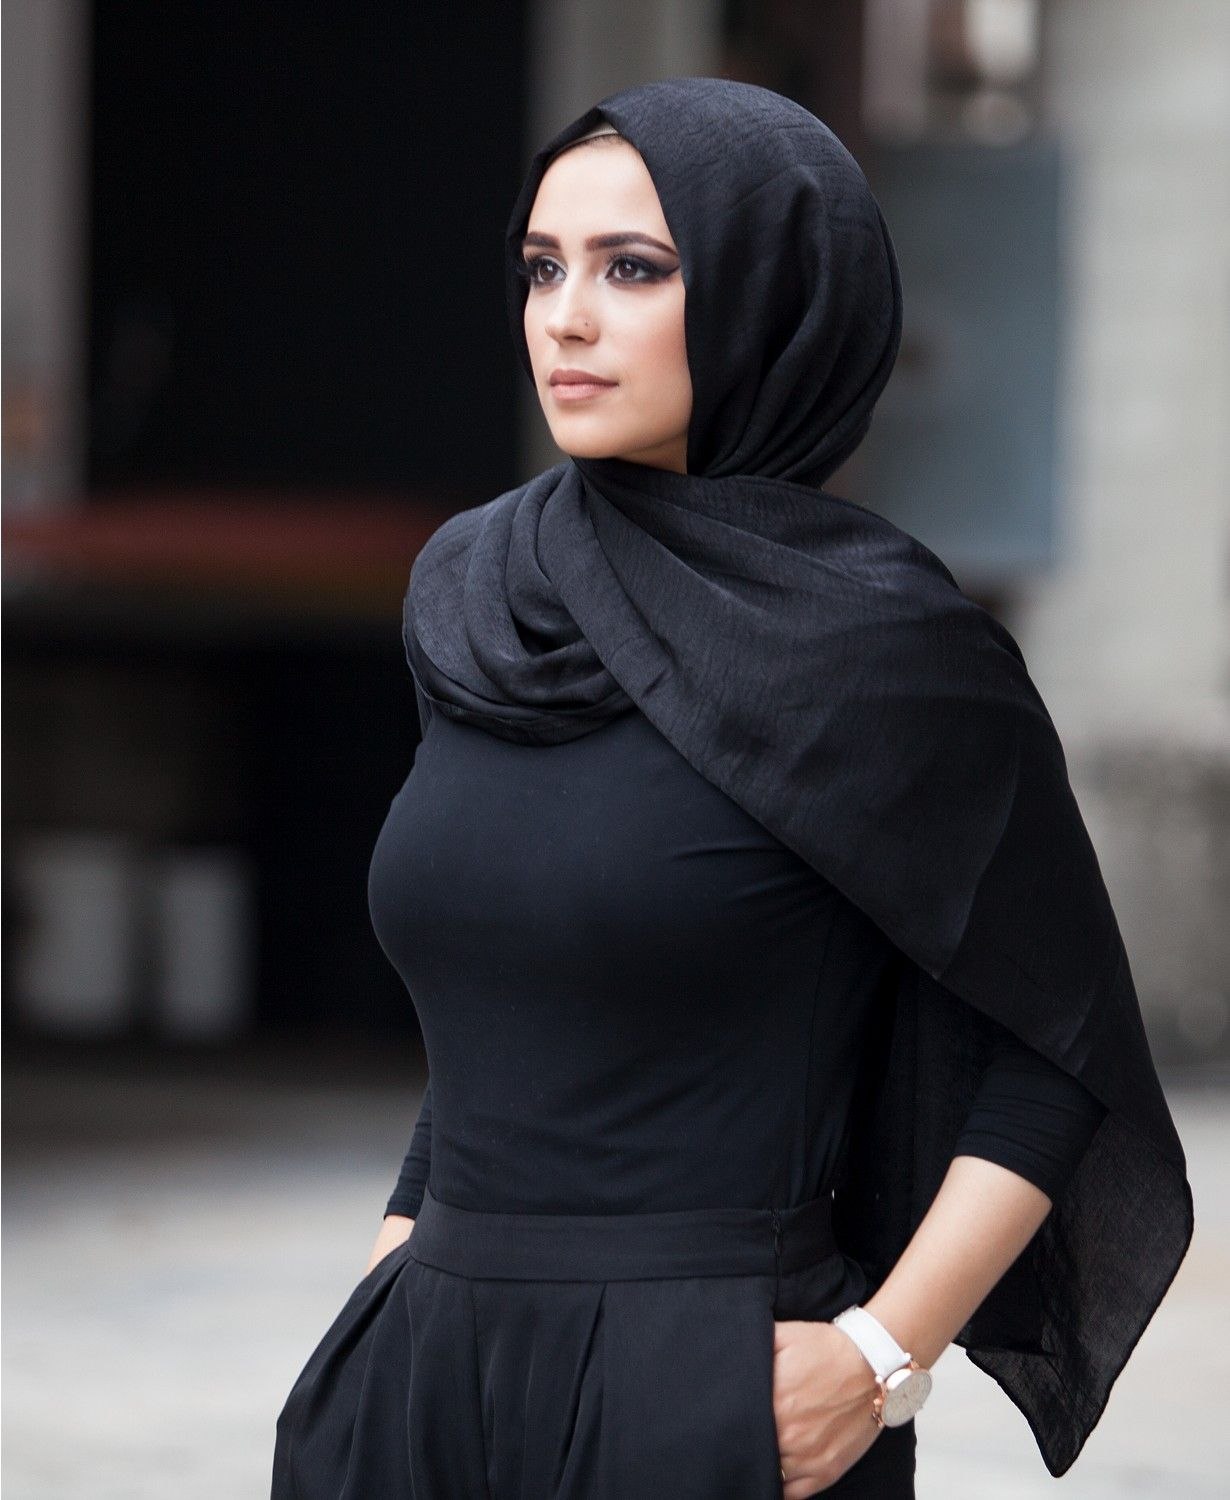 Мусульманская девушка в хиджабе занимается жестким сексом.